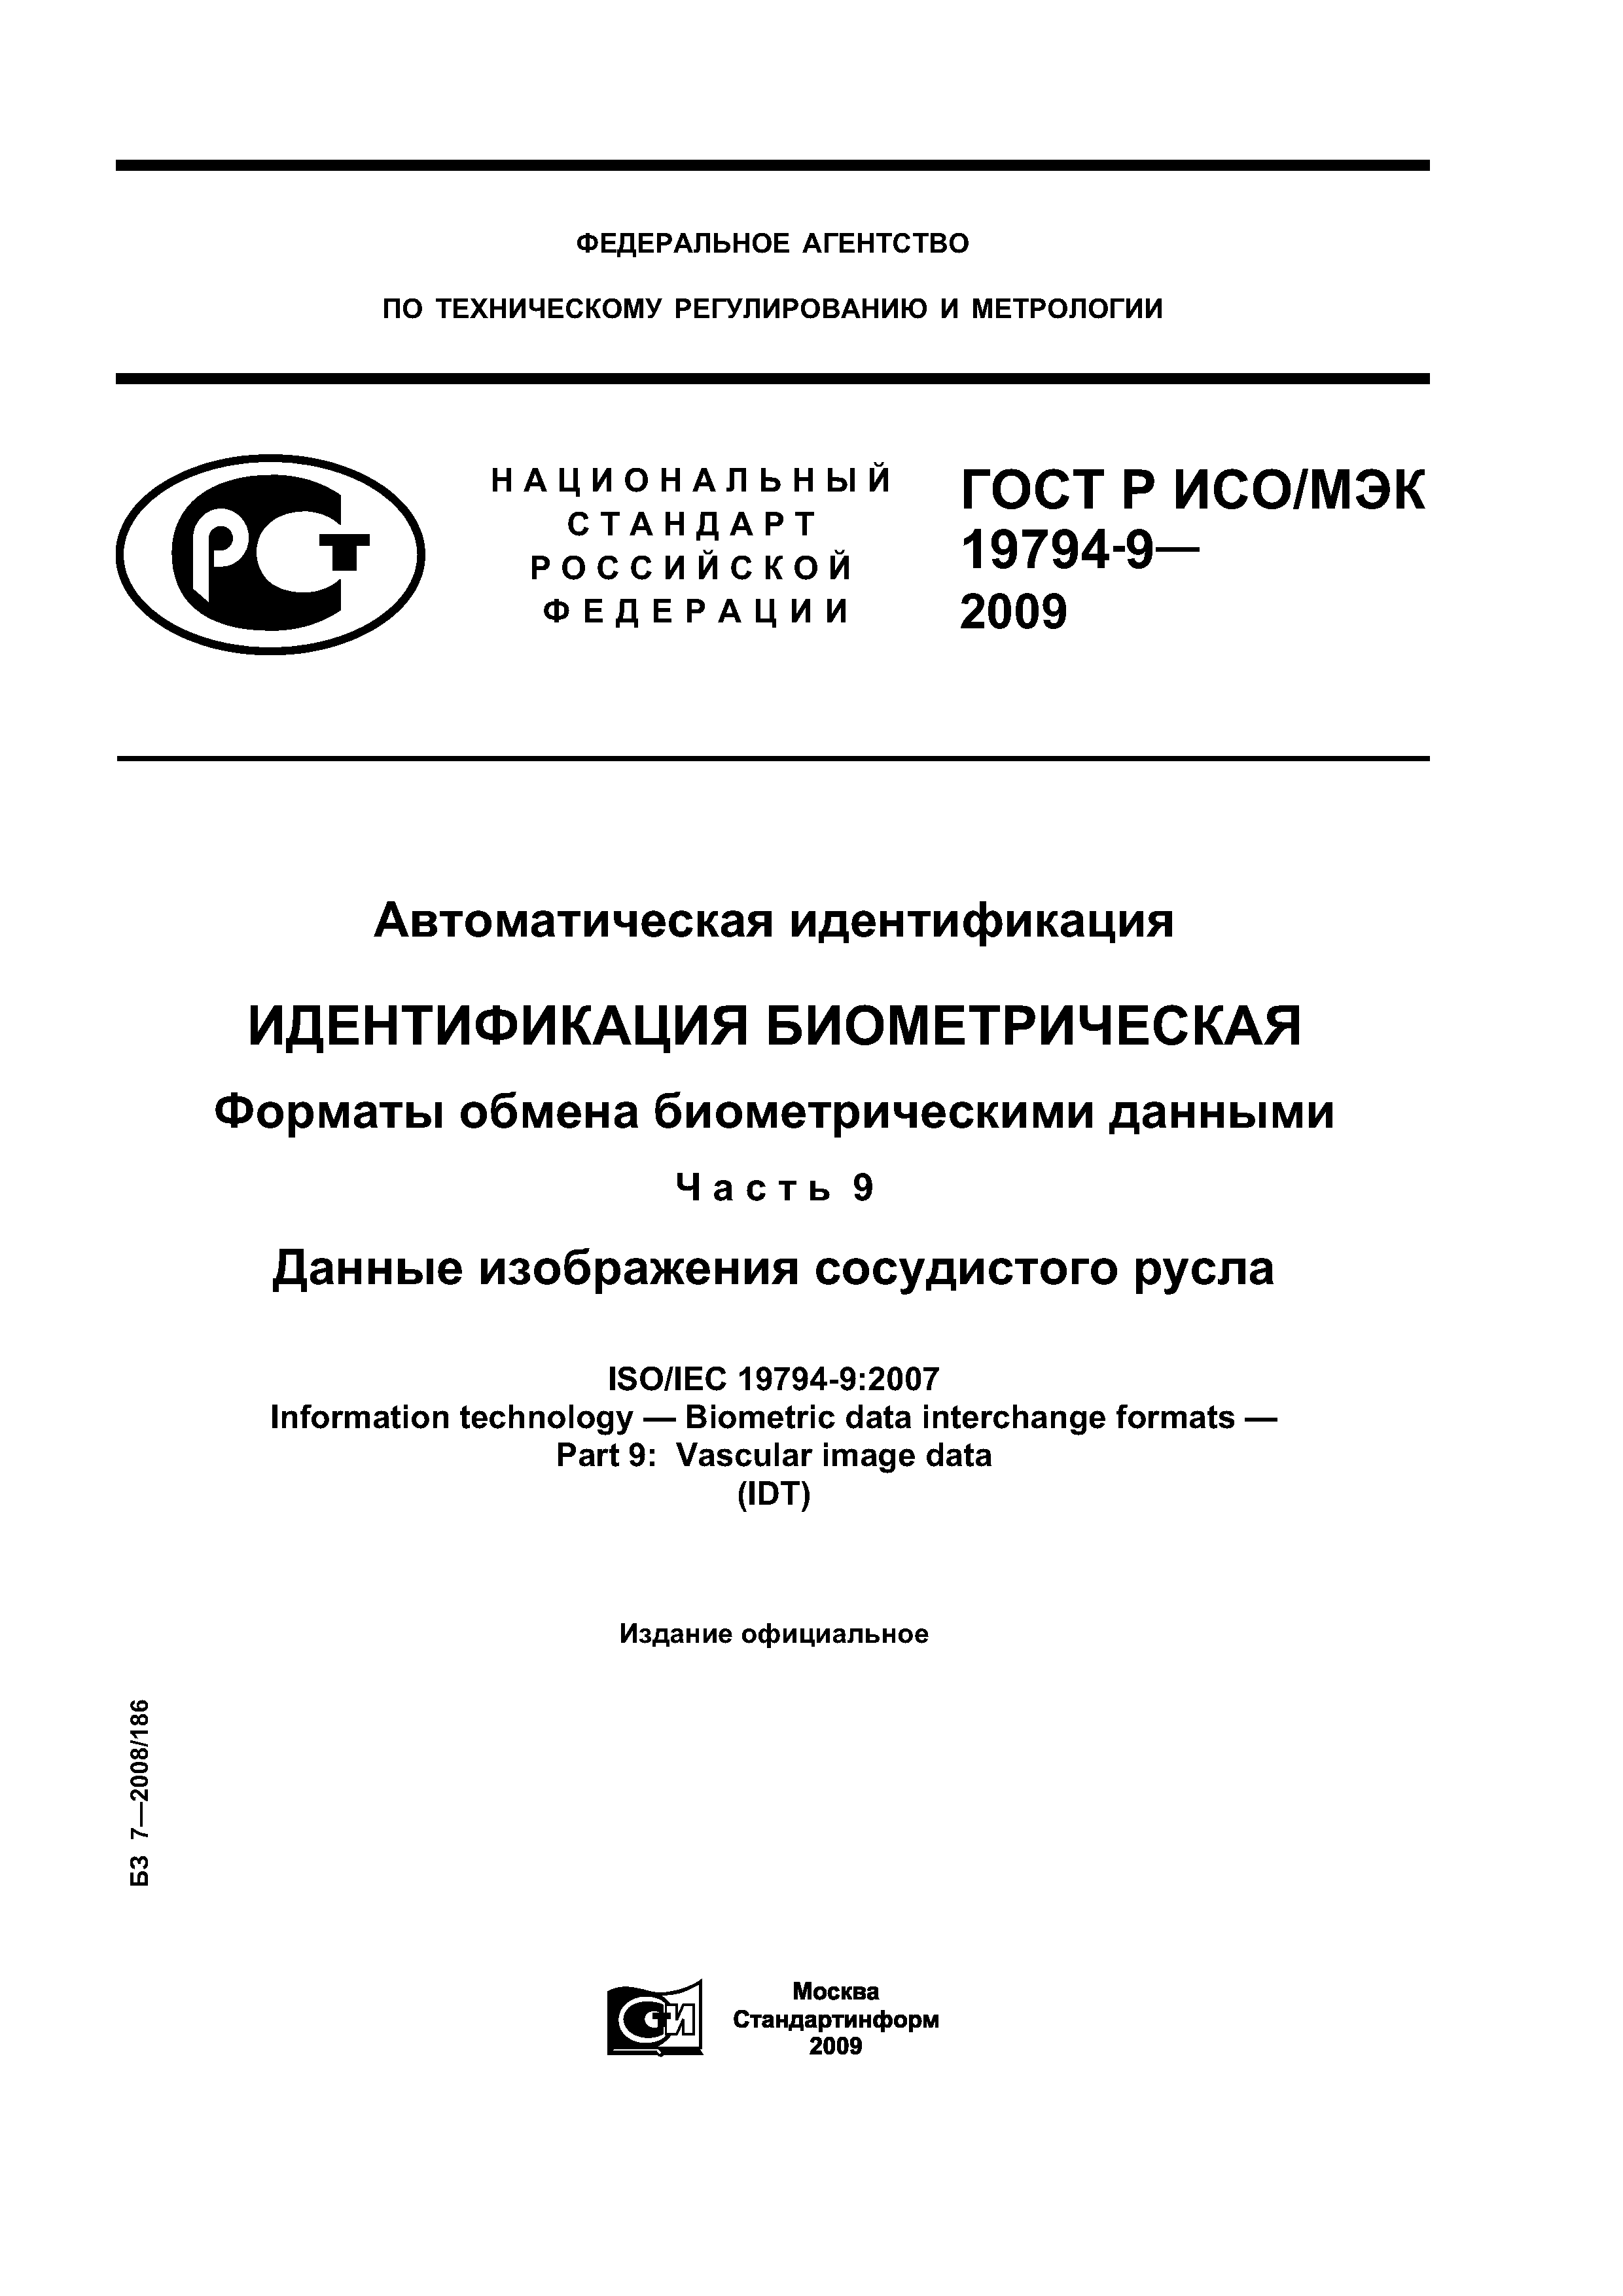 ГОСТ Р ИСО/МЭК 19794-9-2009